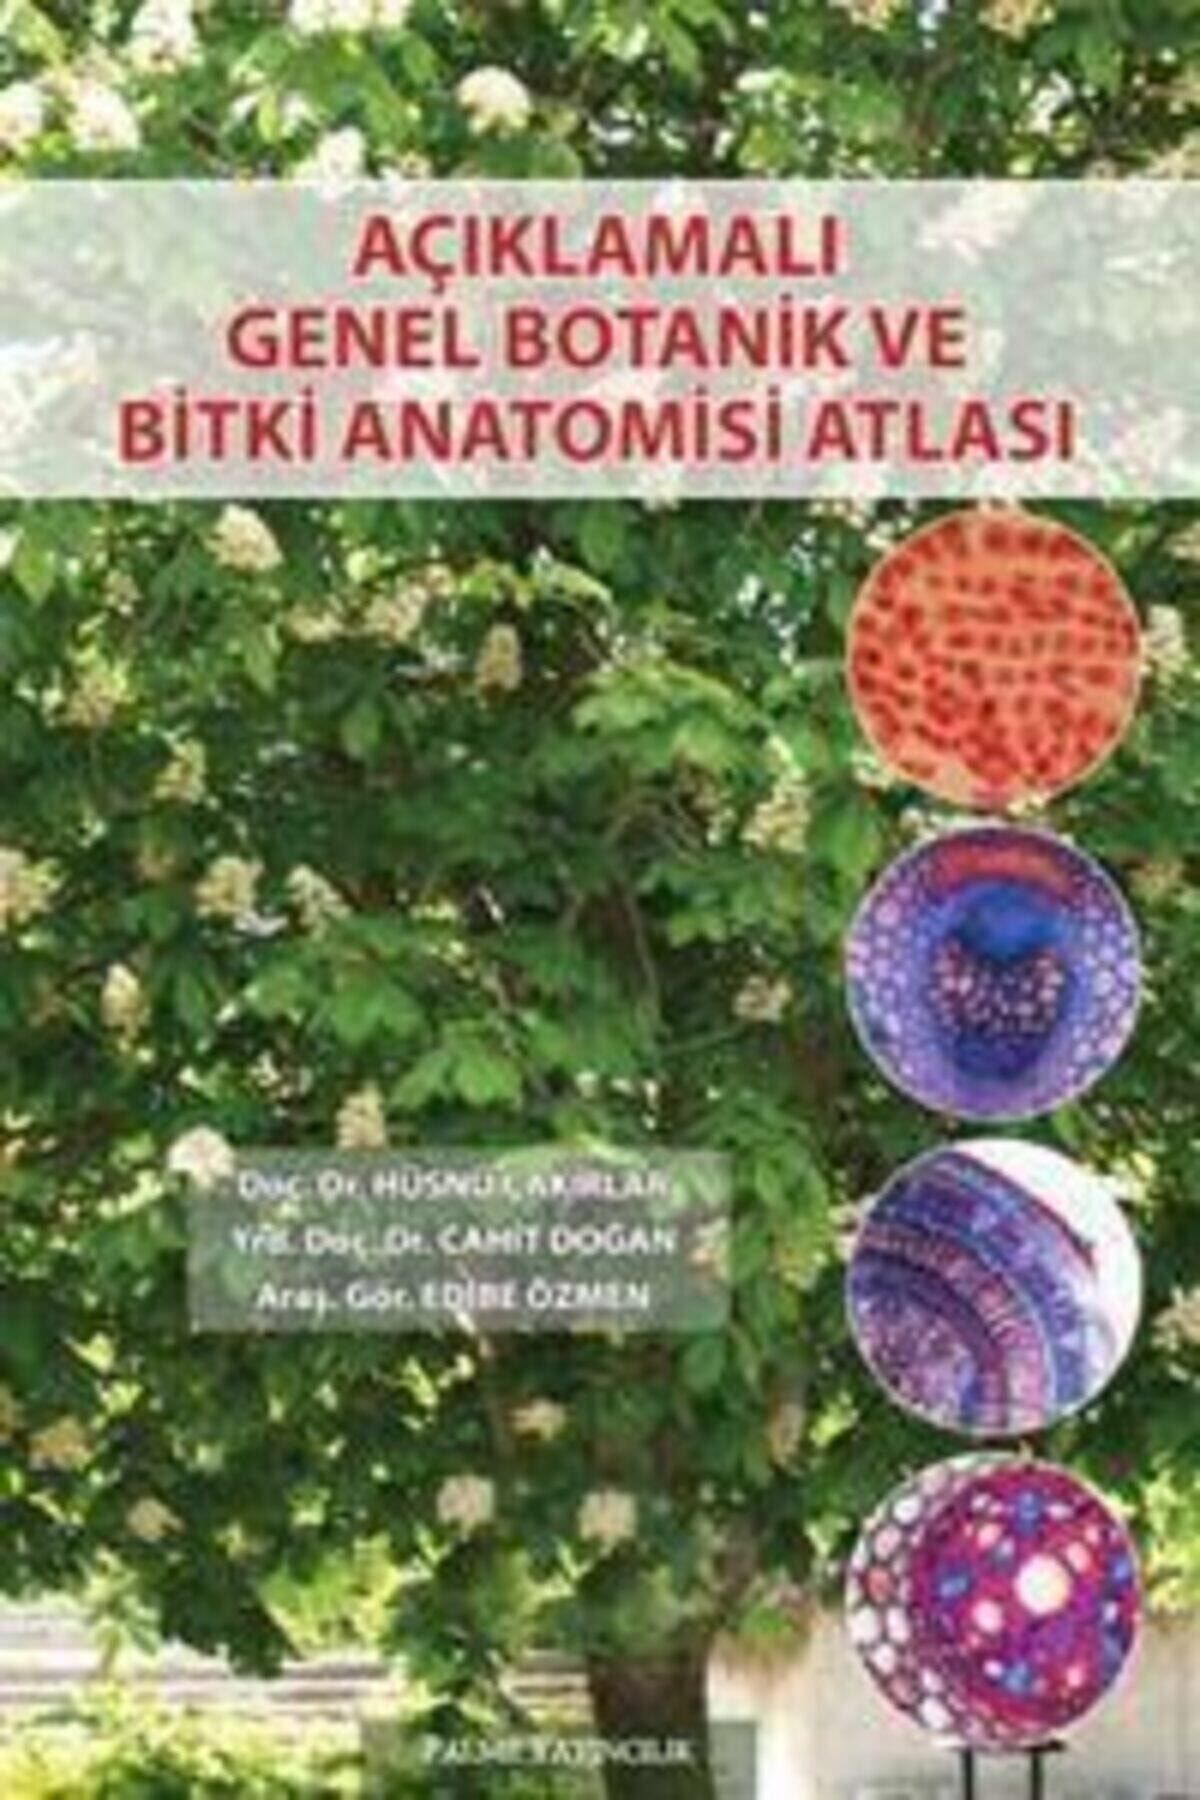 Palme Yayınevi Açıklamalı Genel Botanik Ve Bitki Anatomisi Atlası